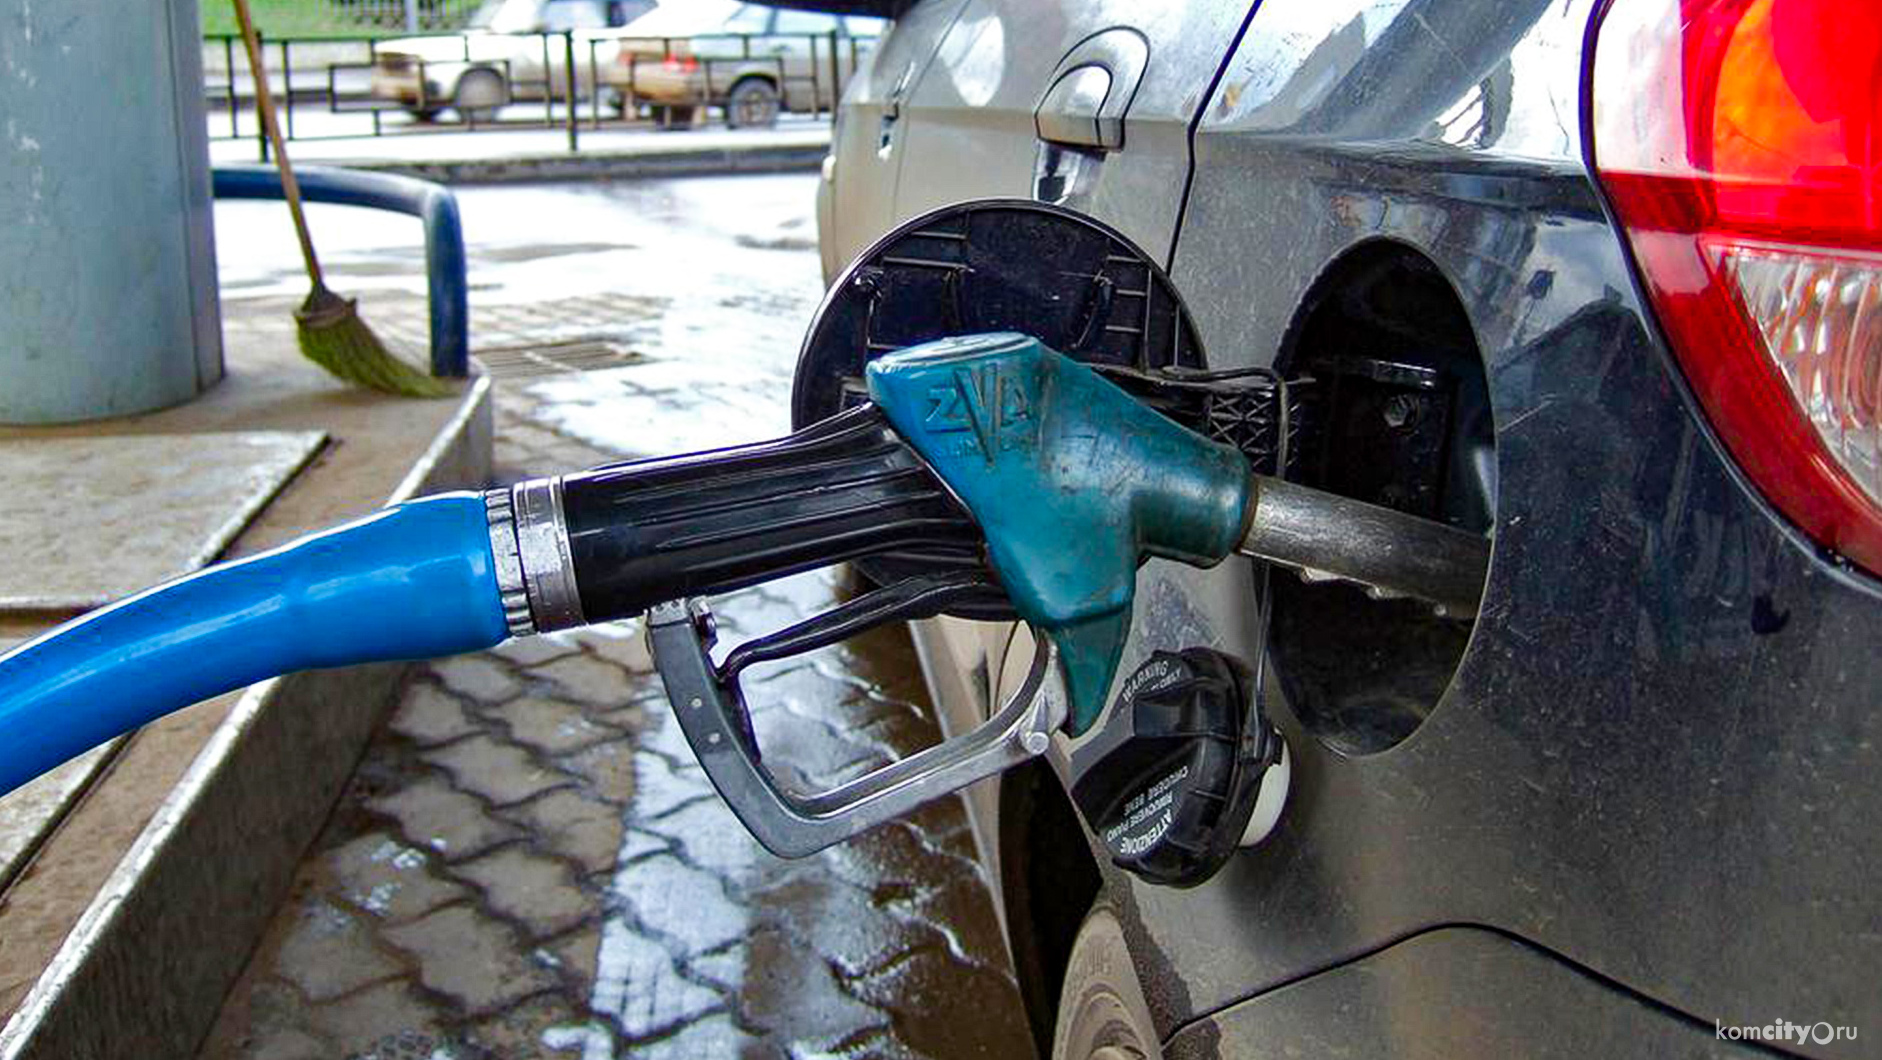 Комсомольск-на-Амуре в лидерах по росту цен на топливо